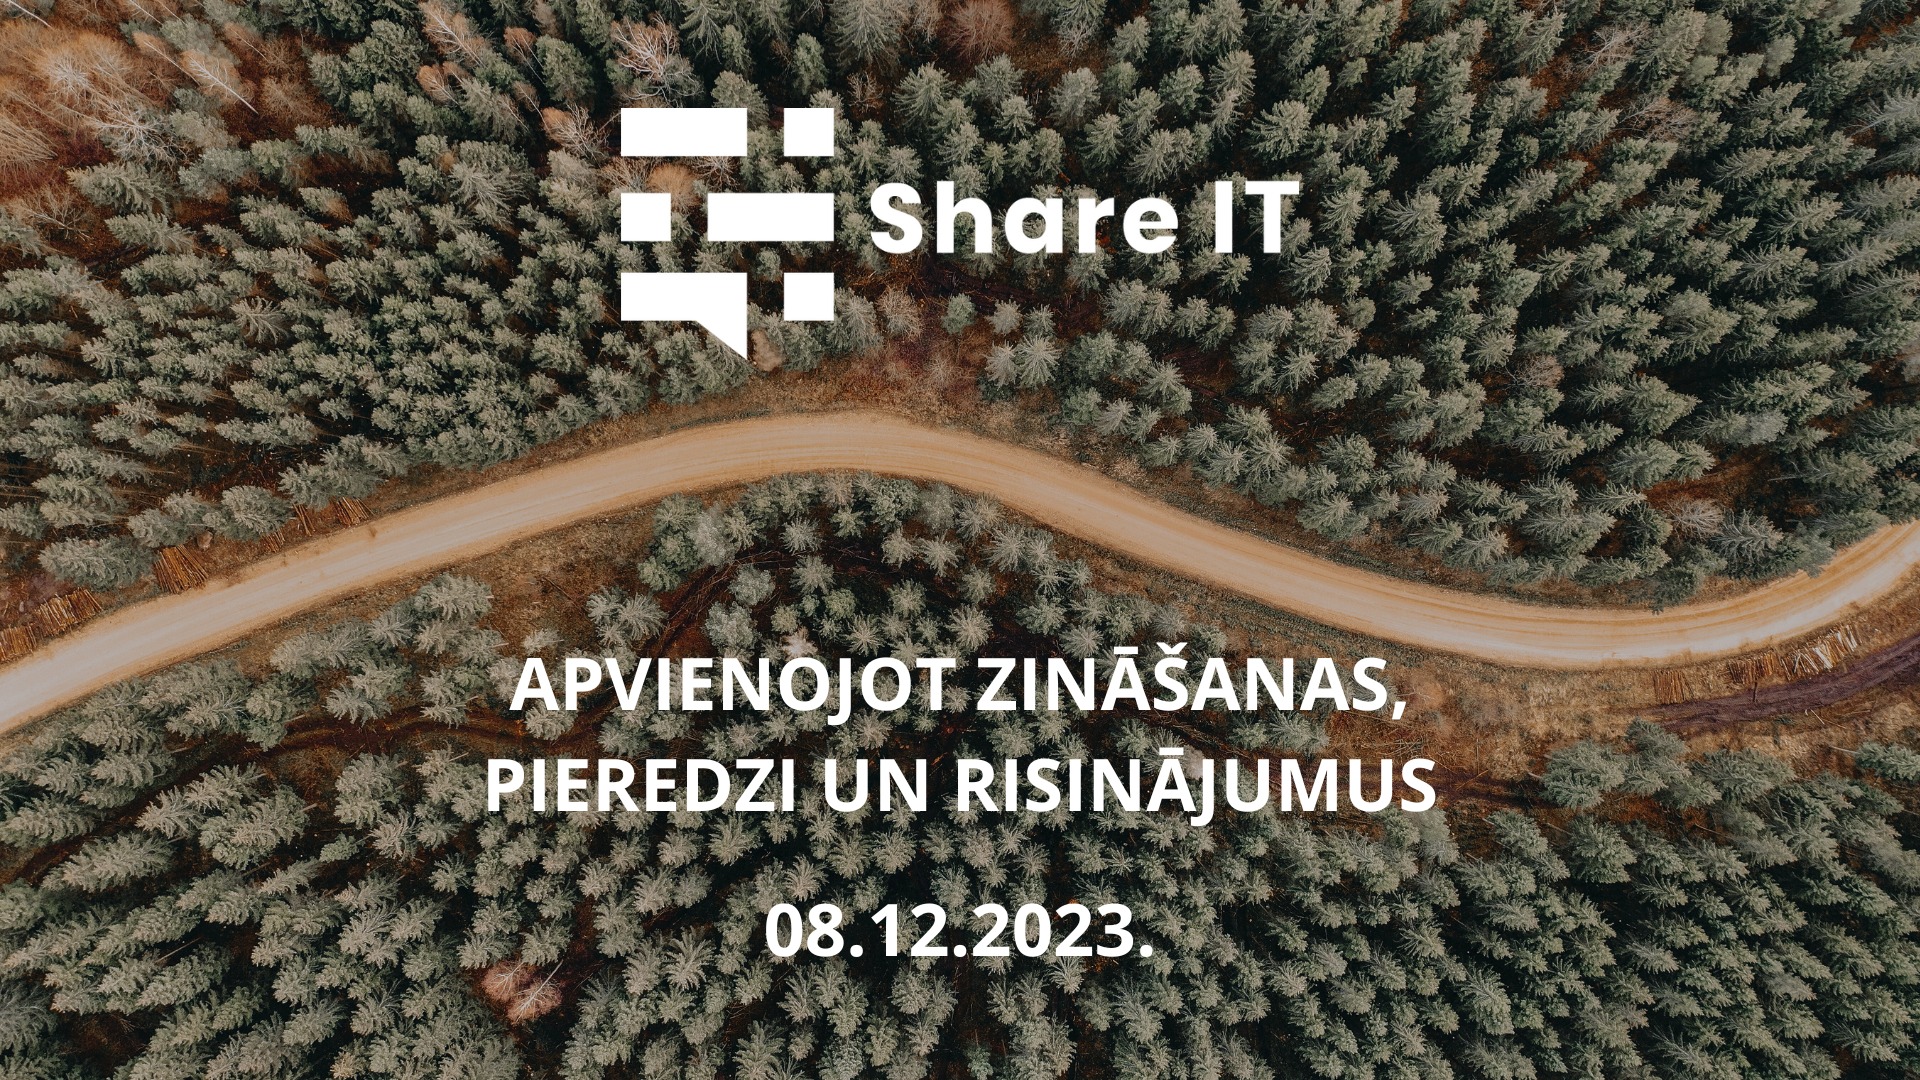 Share IT ir Vidzemes mēroga konference darītājiem – IKT un nozares speciālistiem, uzņēmējiem un biznesa cilvēkiem – ikvienam, kurš ikdienā strādā ar informācijas un komunikācijas tehnoloģijām. Nākam kopā, lai vairotu ideju, zināšanu un pieredzes apmaiņu.2023.gada ShareIT konference plānota kā IT speciālistu un meža īpašnieku / apsaimniekotāju pieredzes apmaiņa.